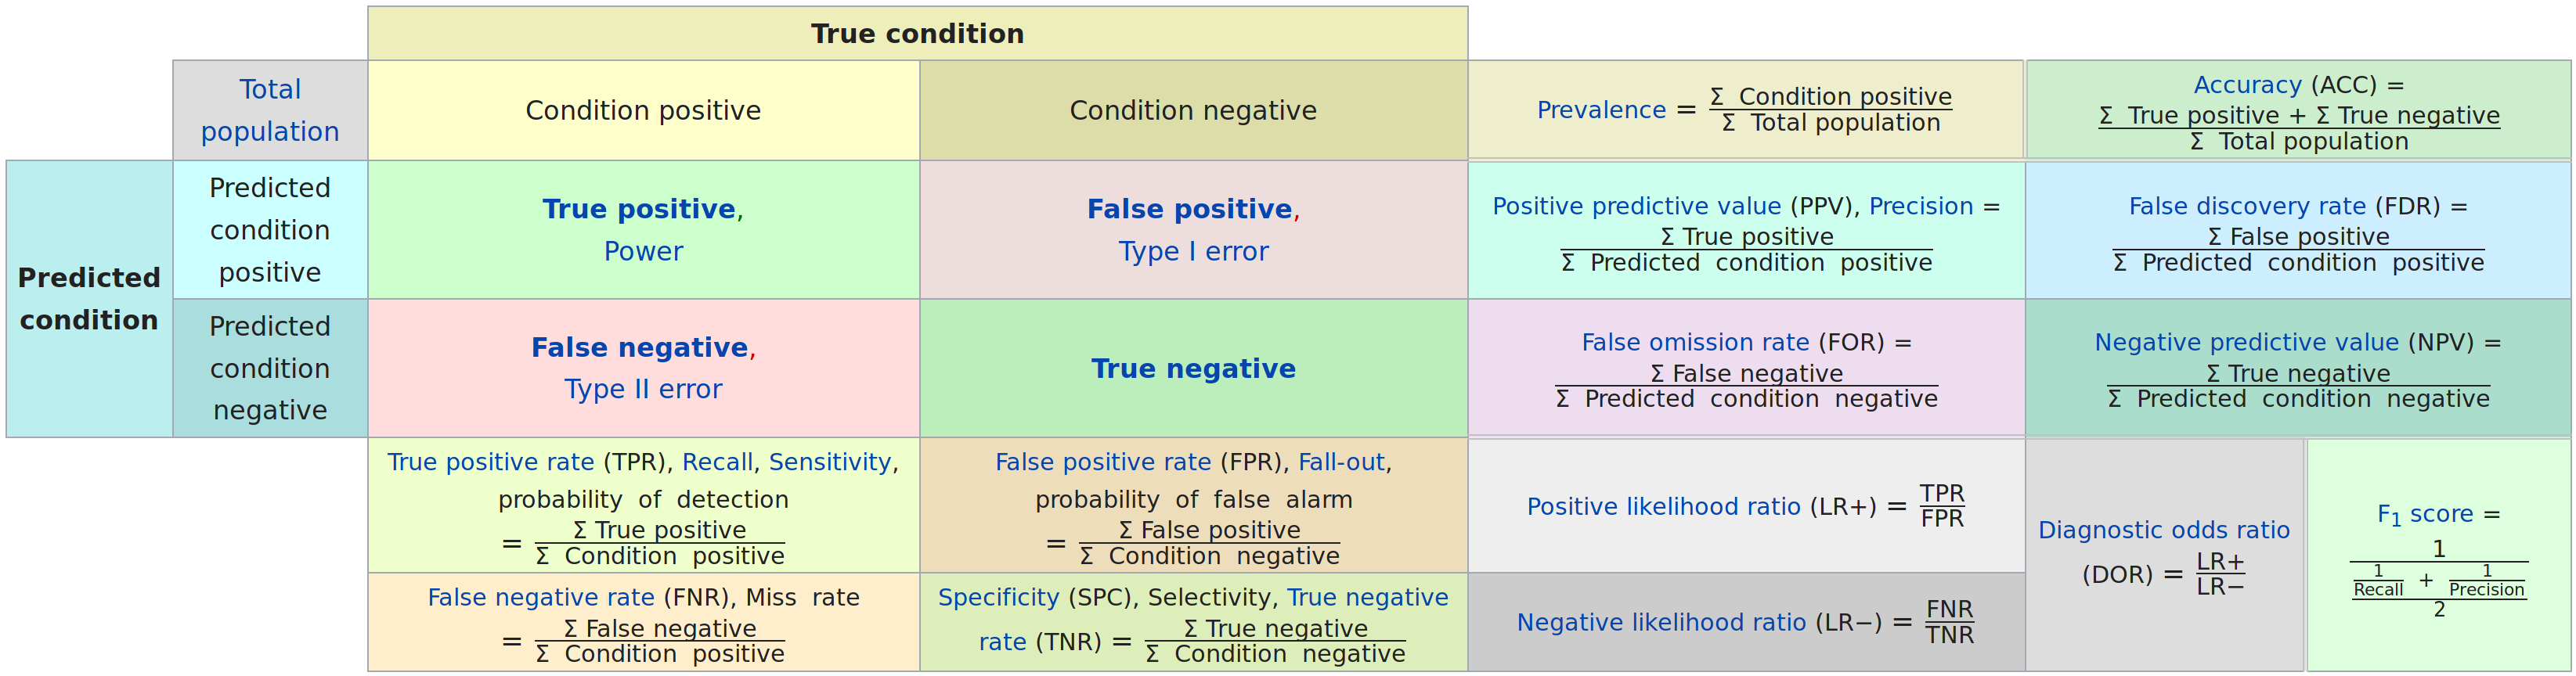 Wikipedia confusion matrix